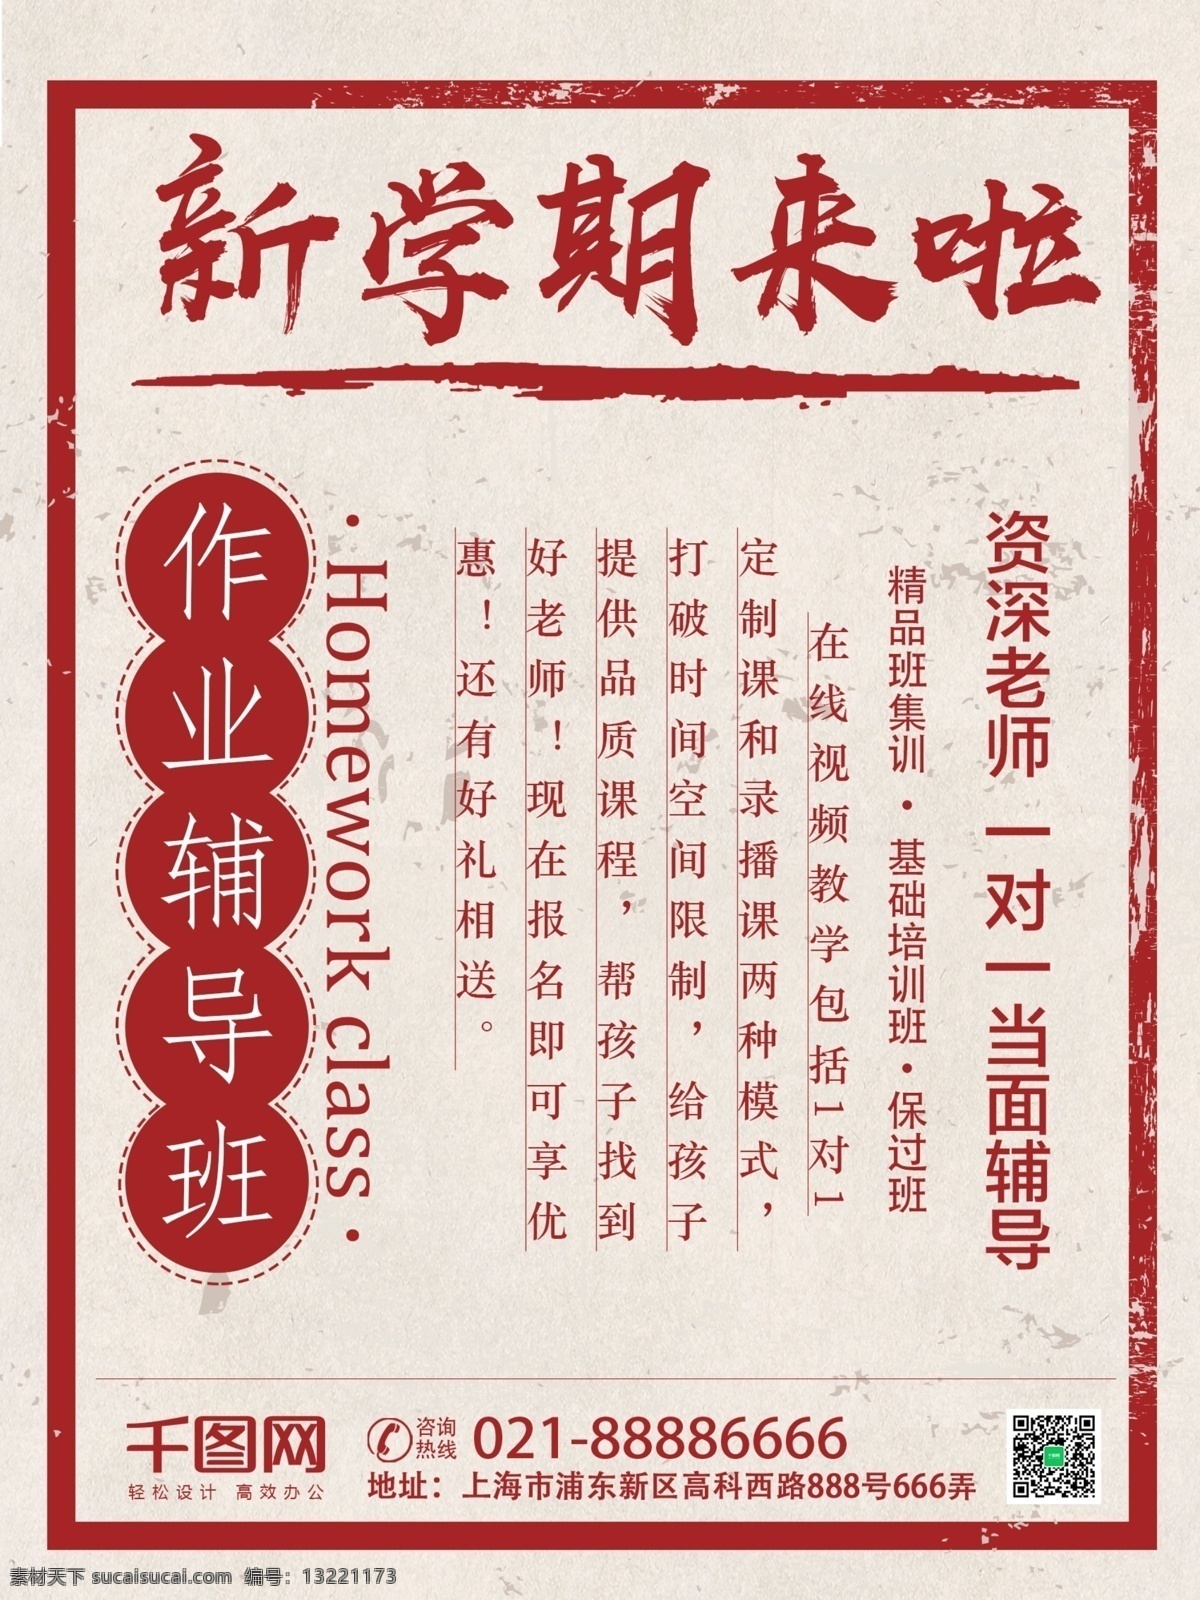 复 古老 上海 作业 辅导班 促销 海报 作业辅导班 复古 促销海报 老上海 报纸嘞